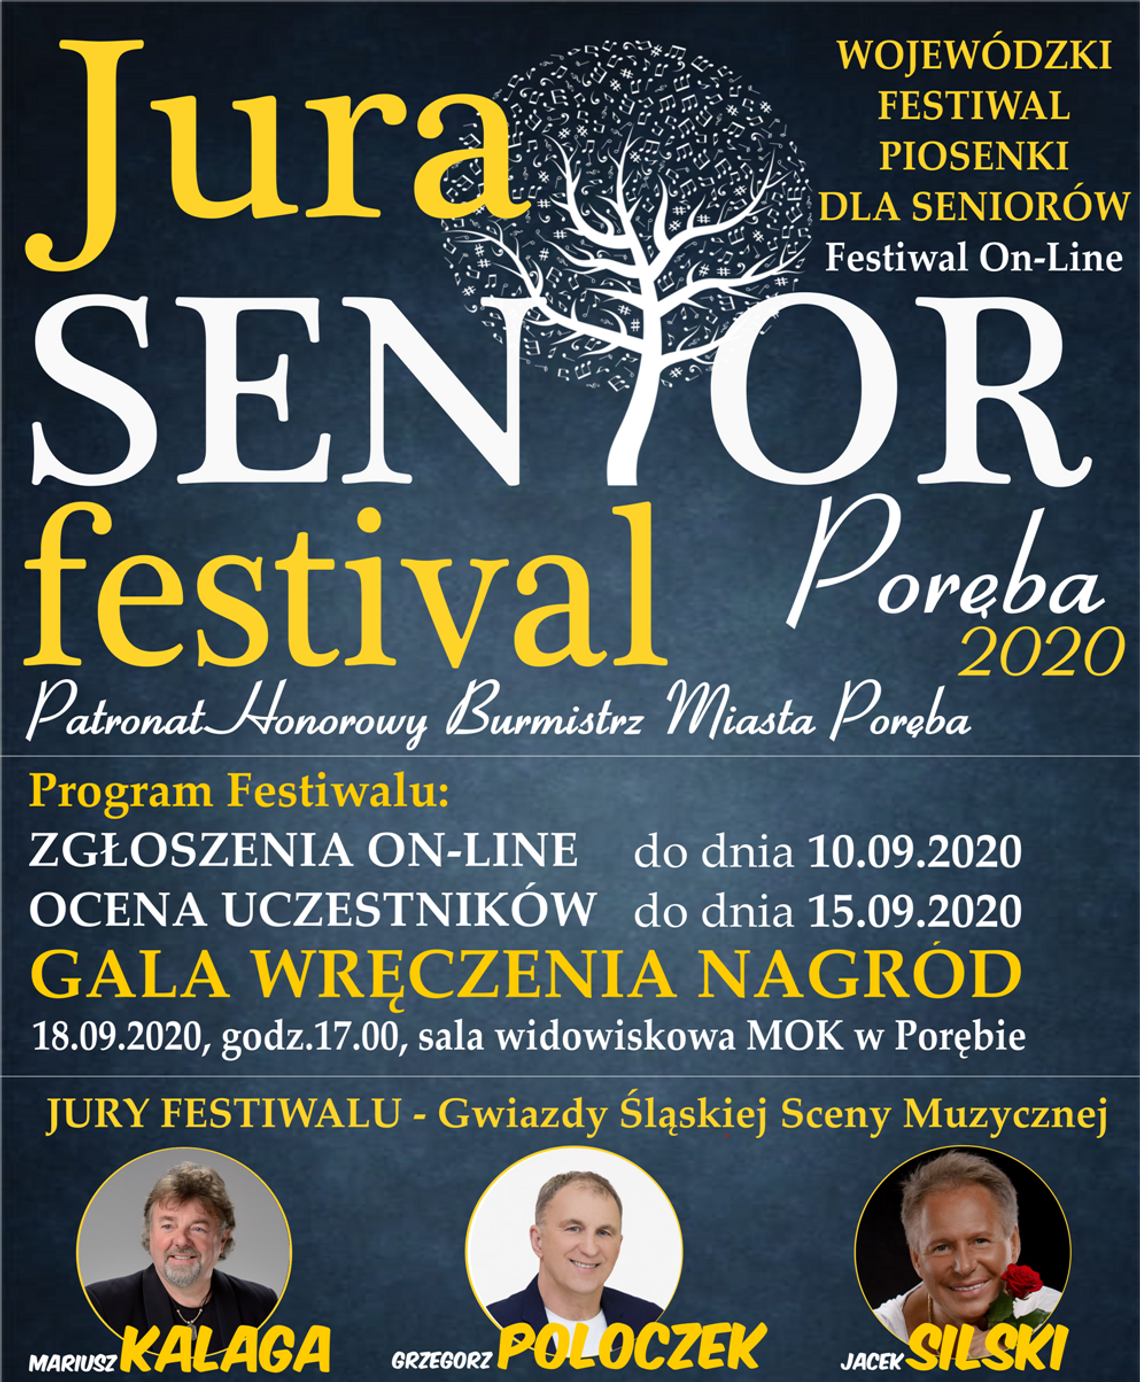 Wojewódzki Festiwal Piosenki dla Seniorów (on-line): JURA SENIOR FESTIVAL - PORĘBA 2020 